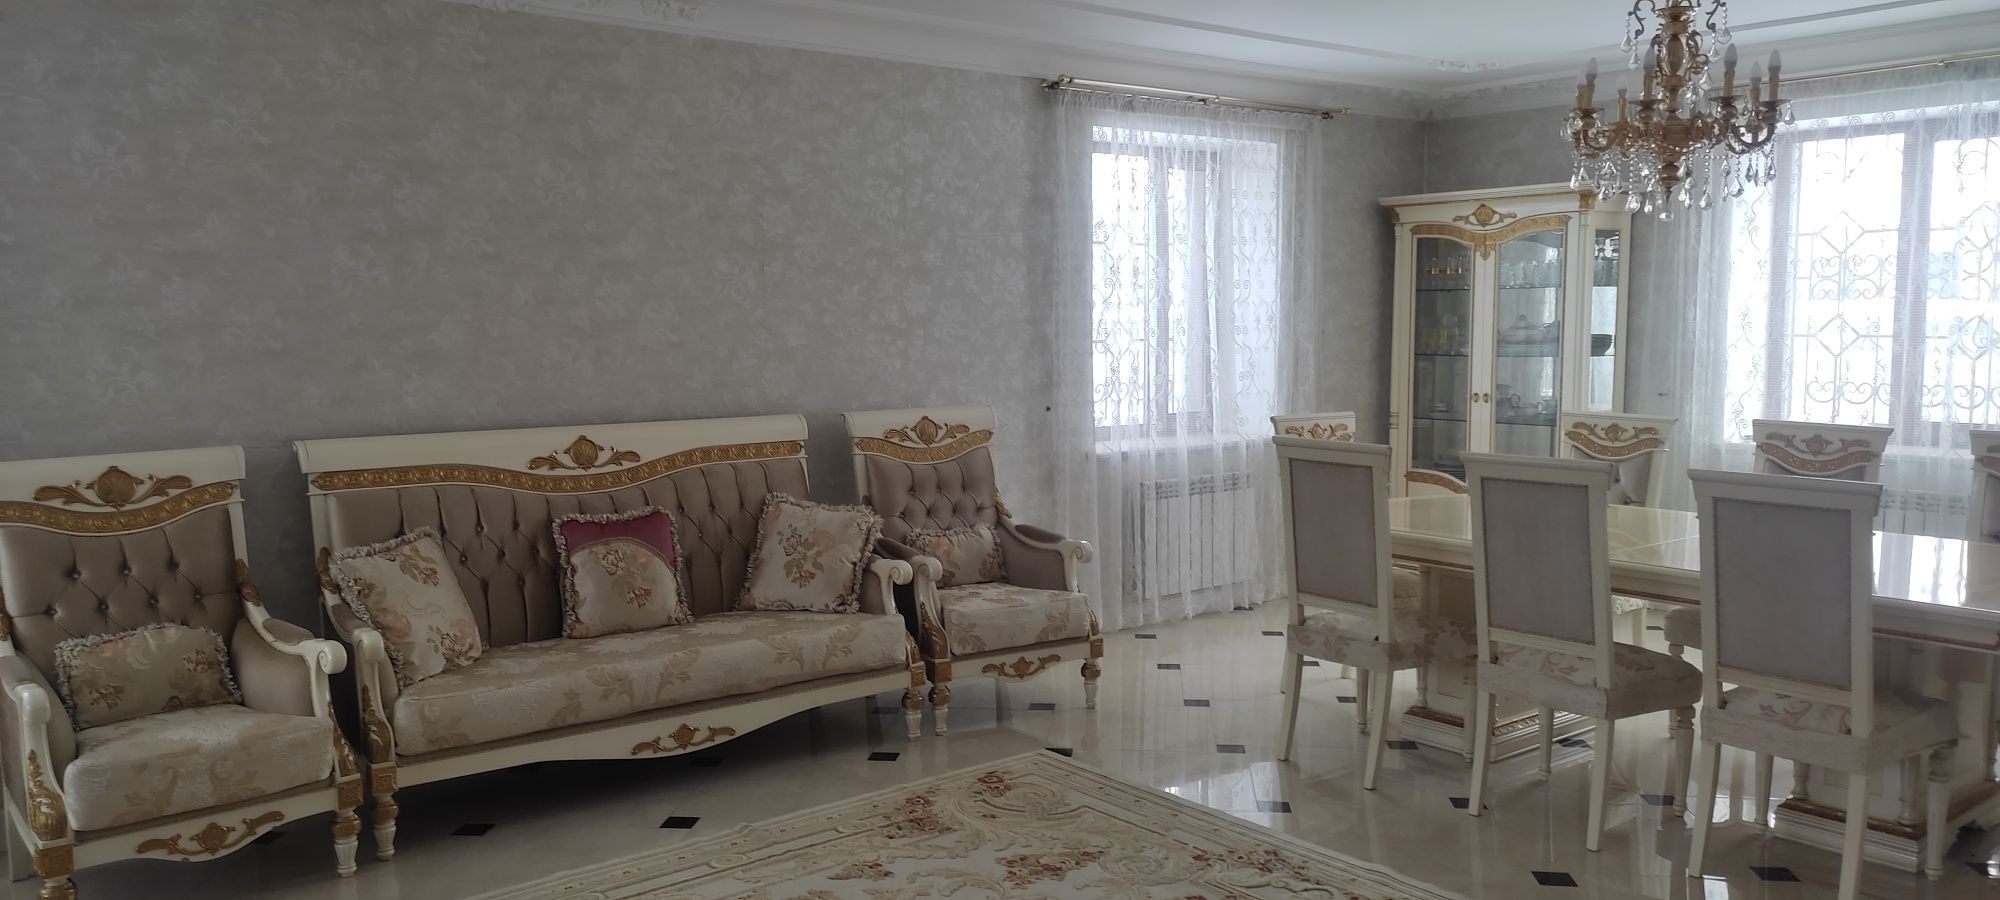 Корпусная мебель жилая комната производства Турция б/у цена договорная